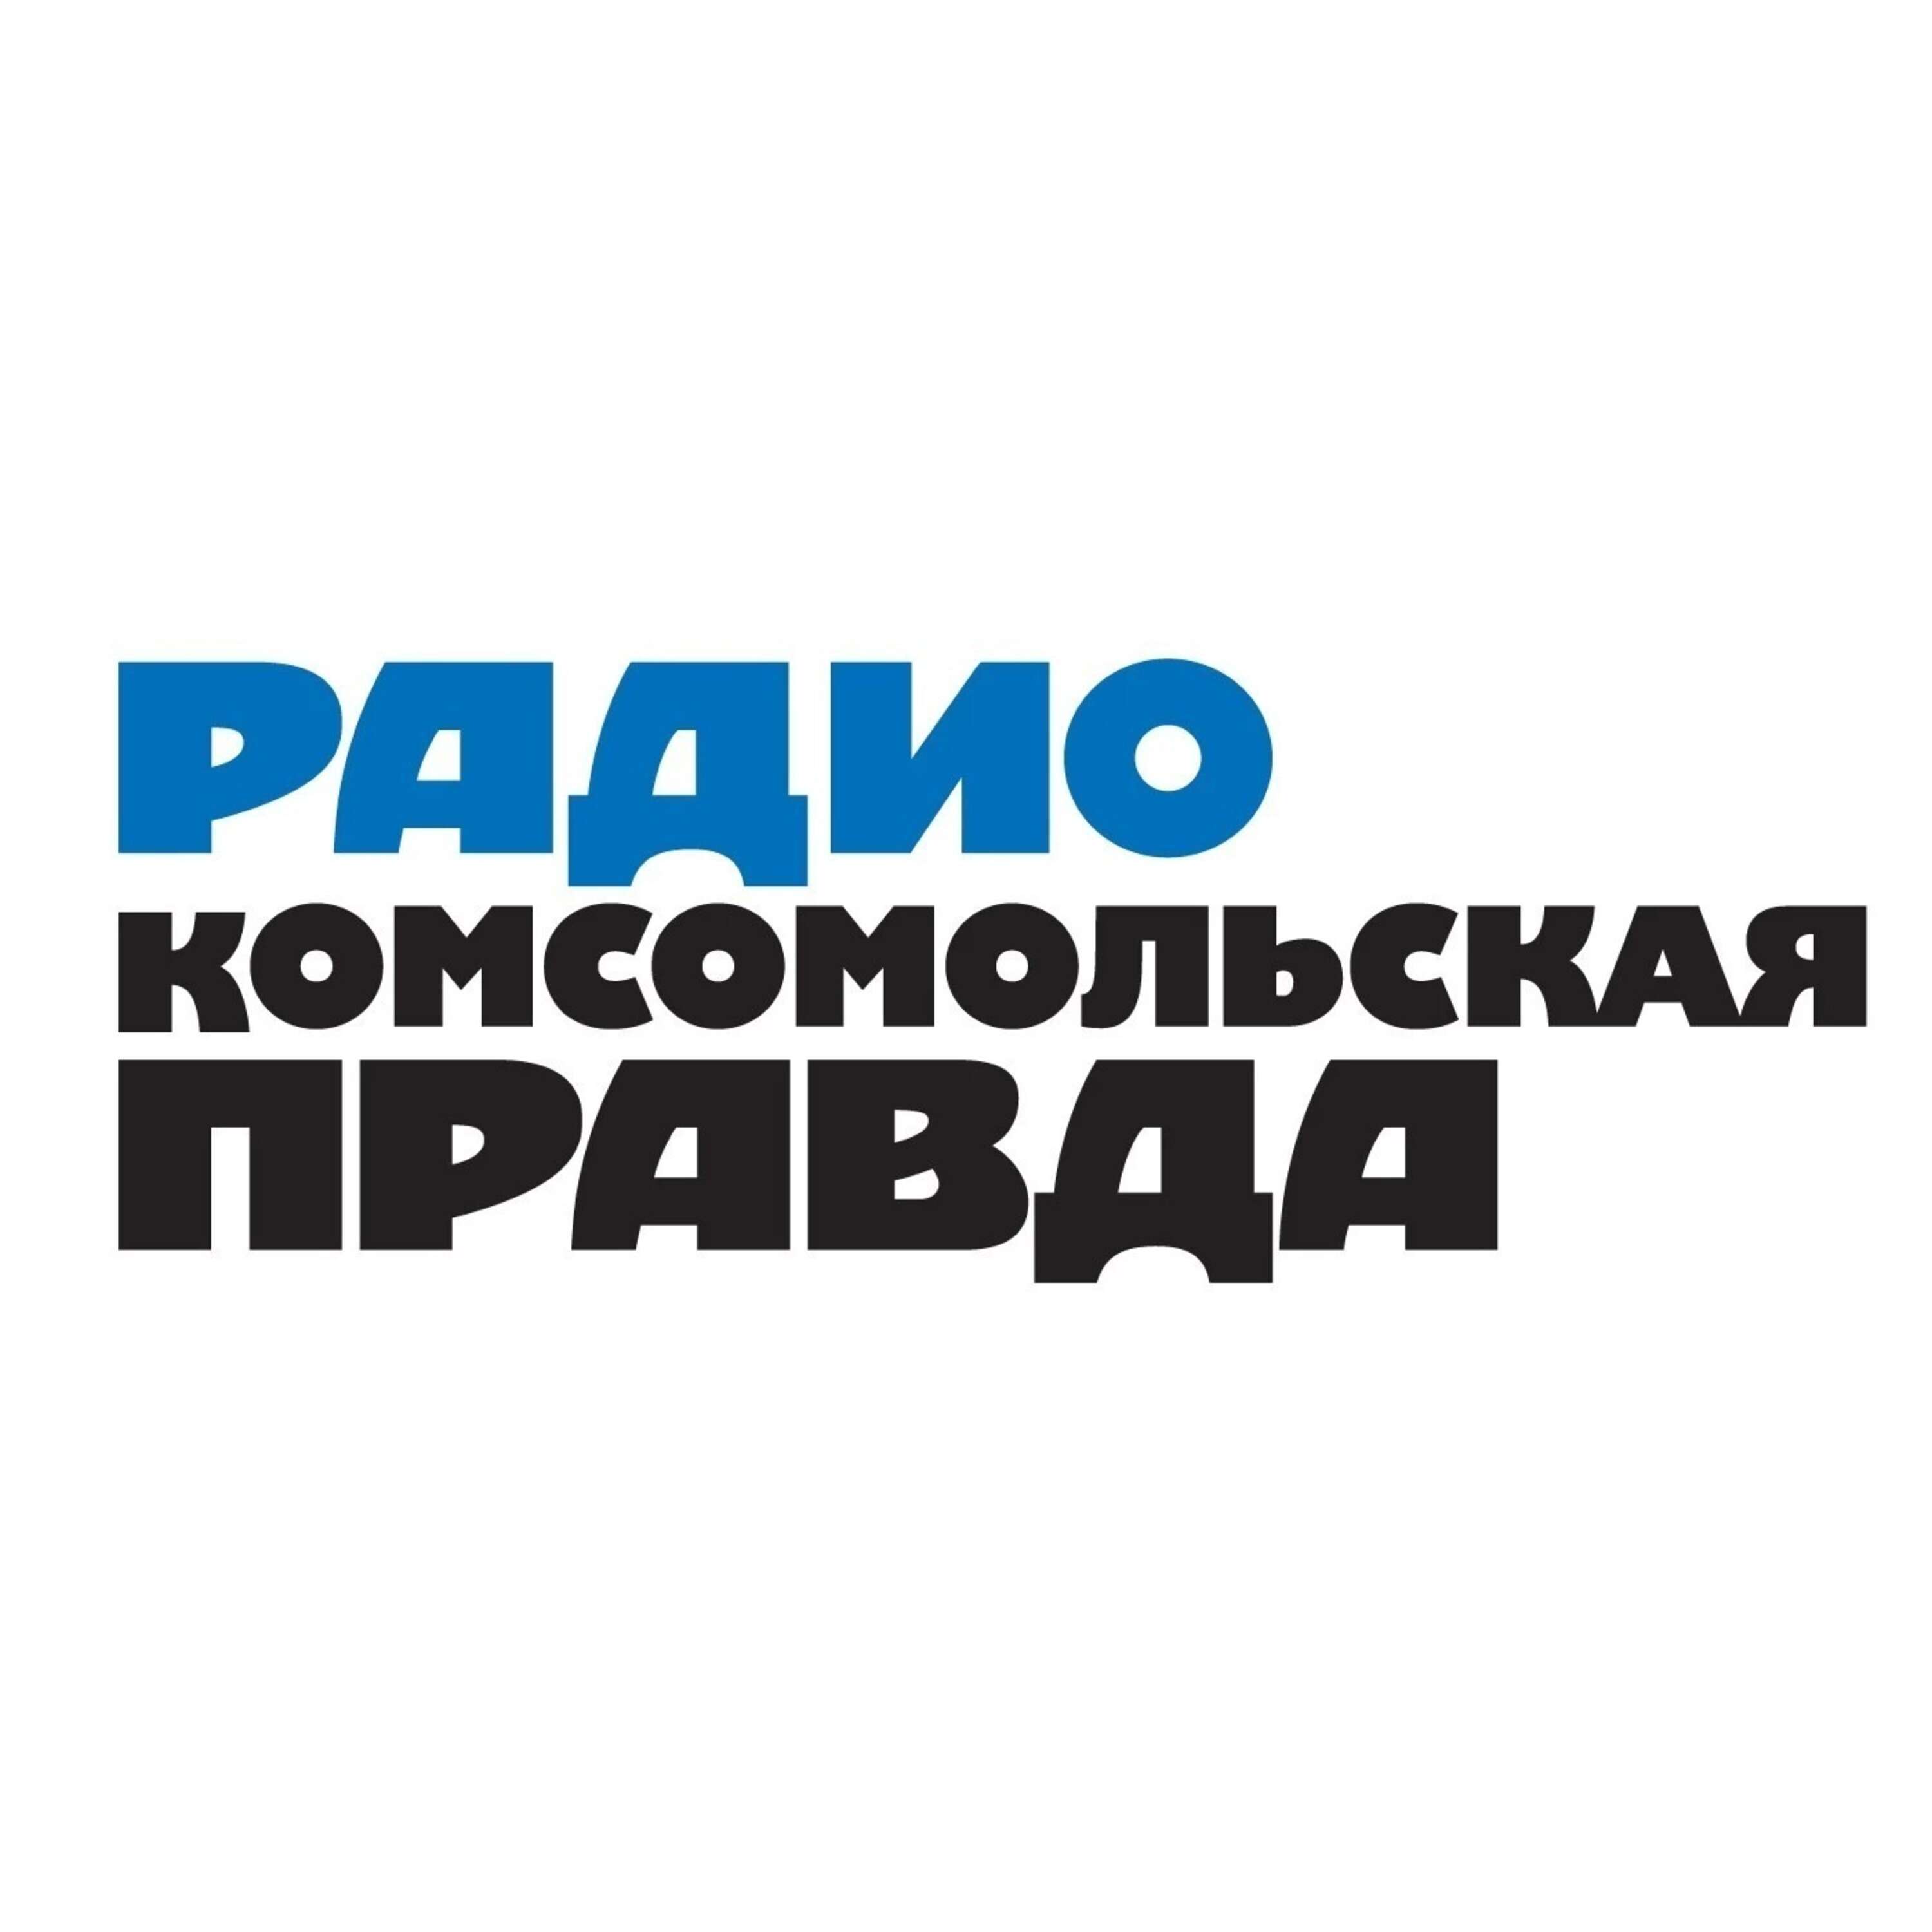 История за пределами учебников:Радио «Комсомольская правда»